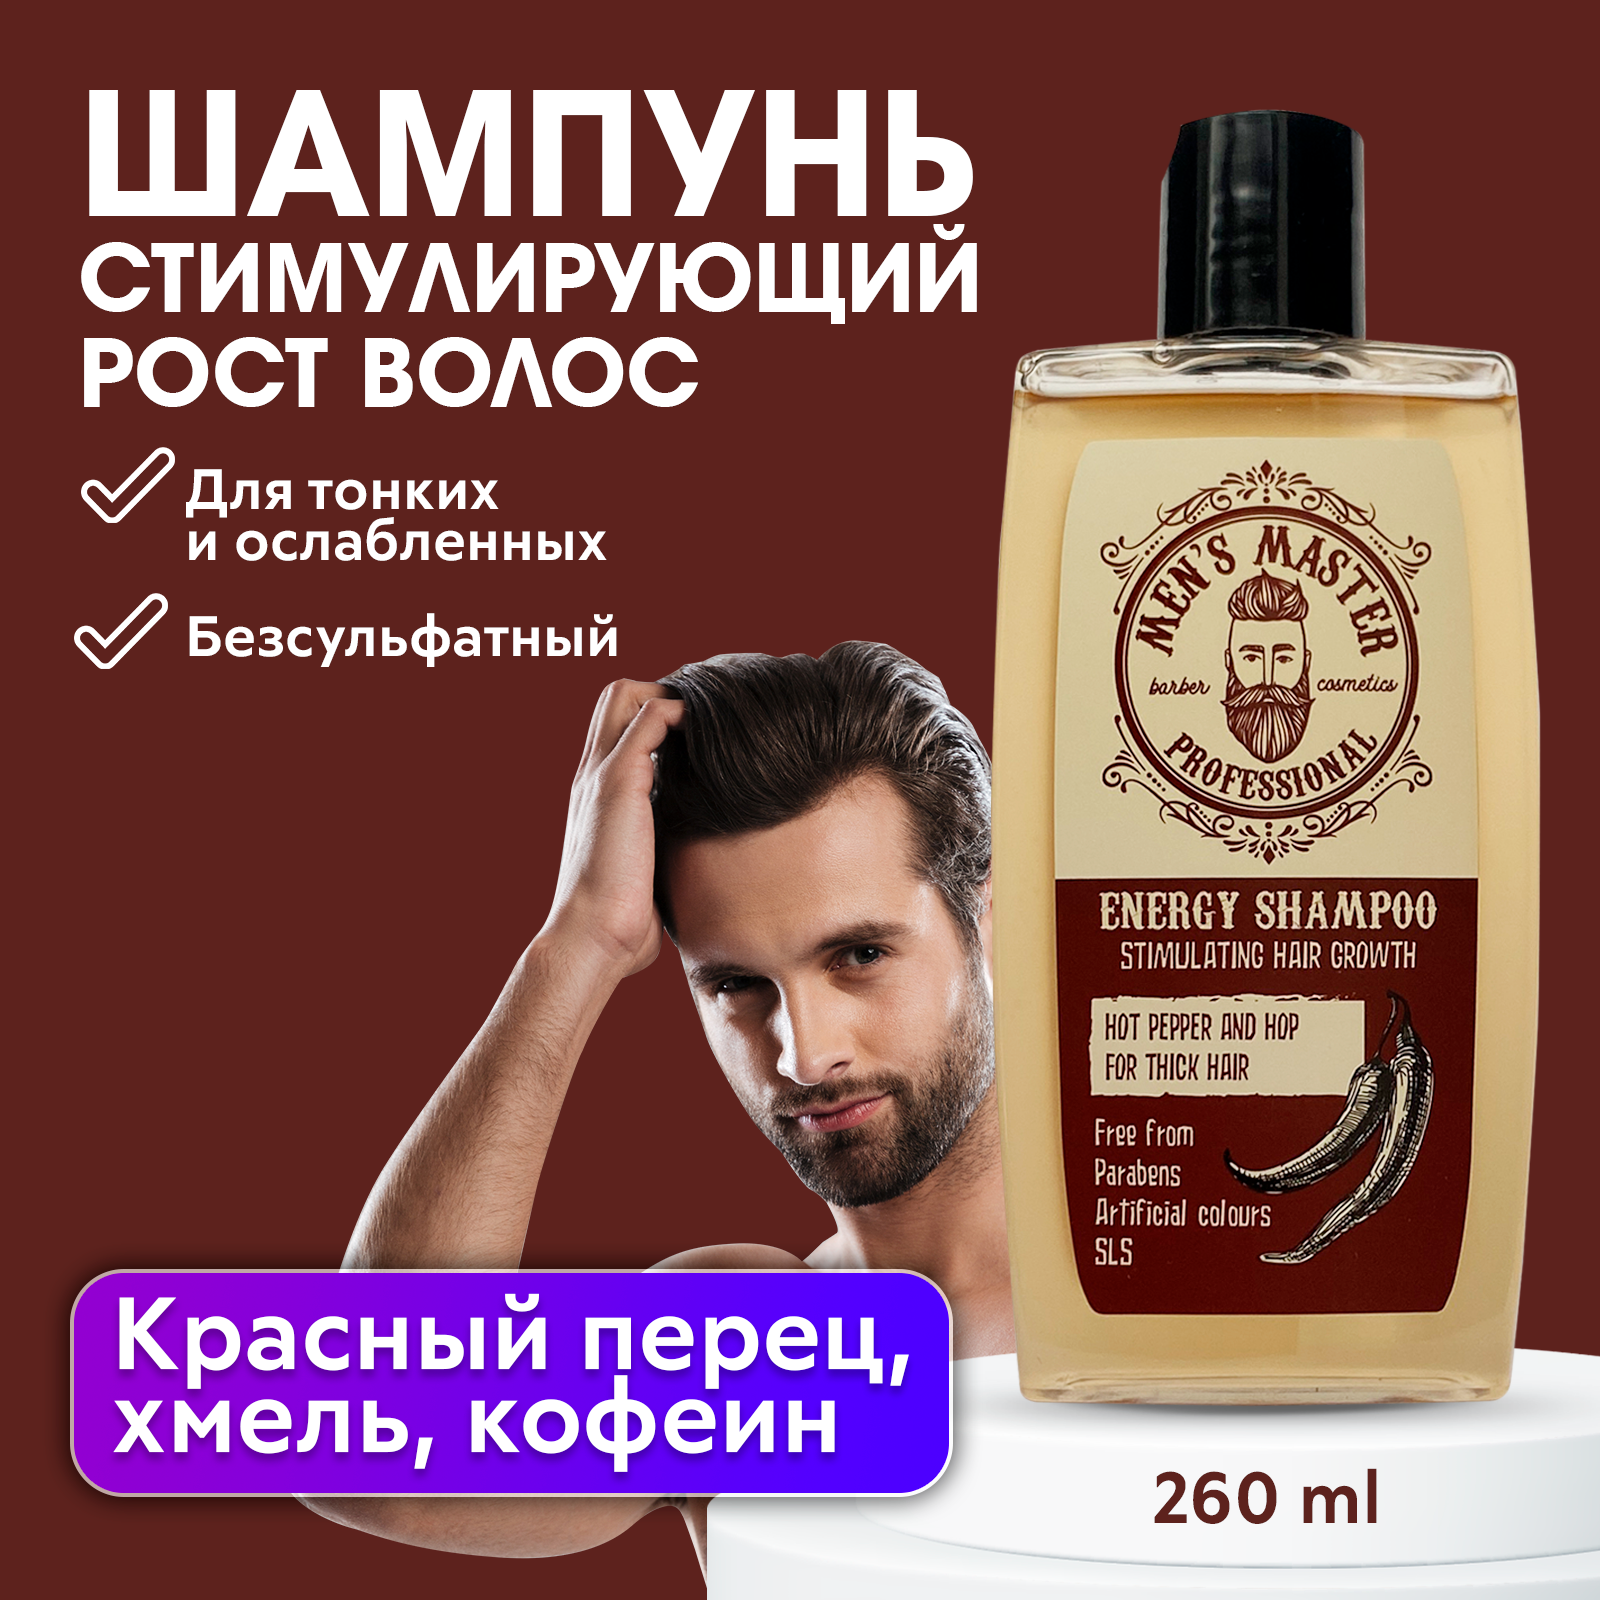 Профессиональный шампунь MEN’S MASTER для роста волос 260 мл ollin professional шампунь для роста волос стимулирующий ollin premier for men